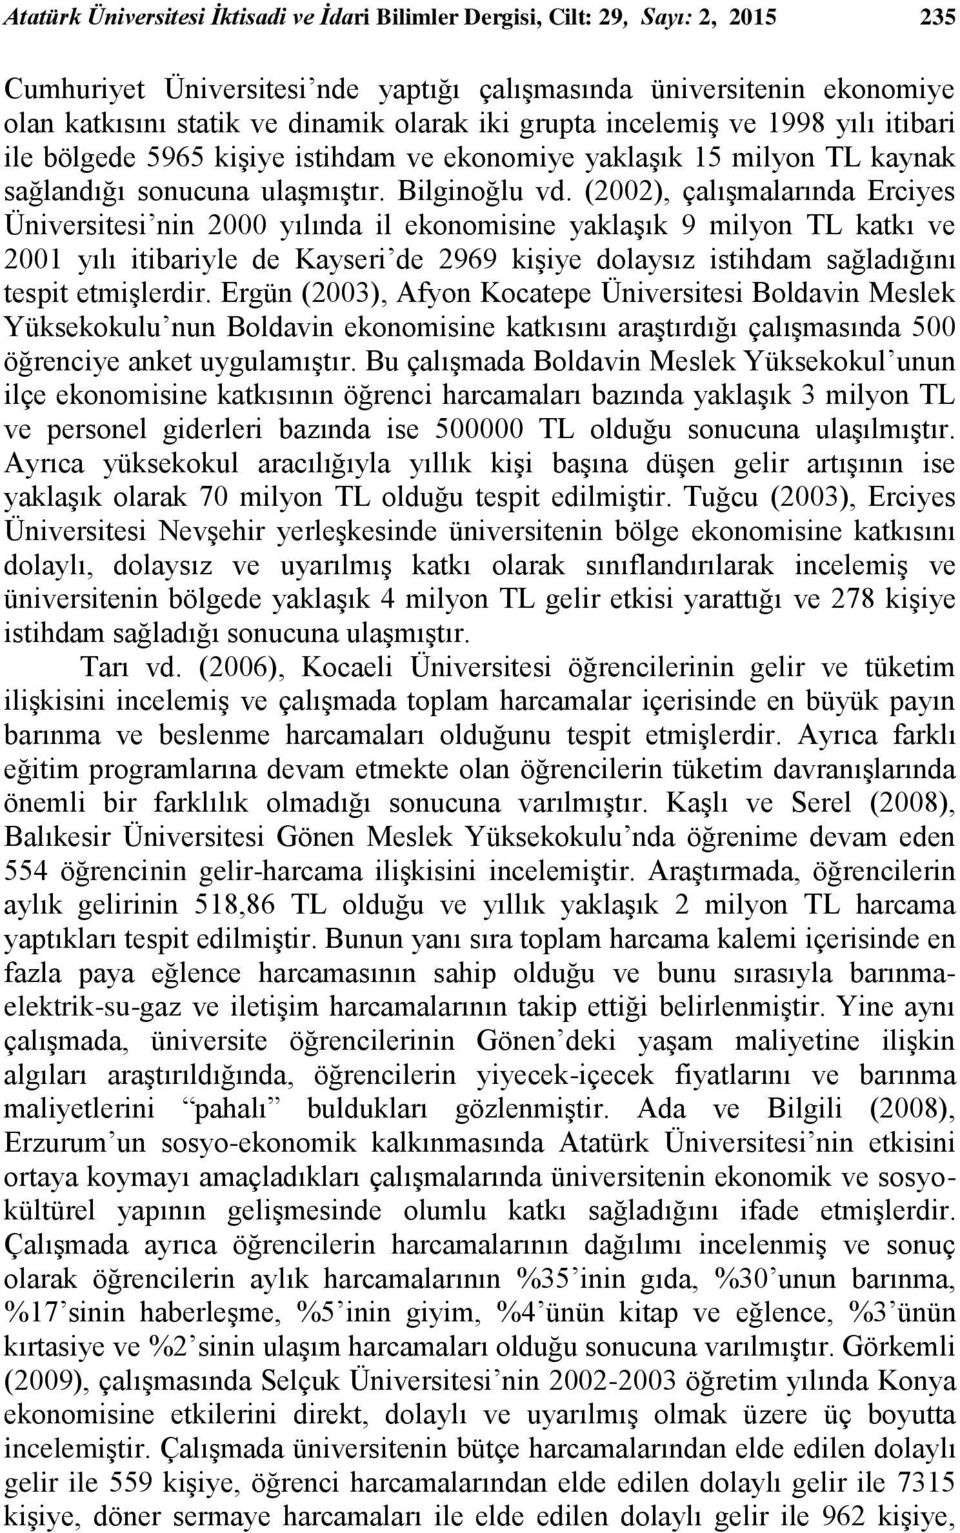 (2002), çalışmalarında Erciyes Üniversitesi nin 2000 yılında il ekonomisine yaklaşık 9 milyon TL katkı ve 2001 yılı itibariyle de Kayseri de 2969 kişiye dolaysız istihdam sağladığını tespit